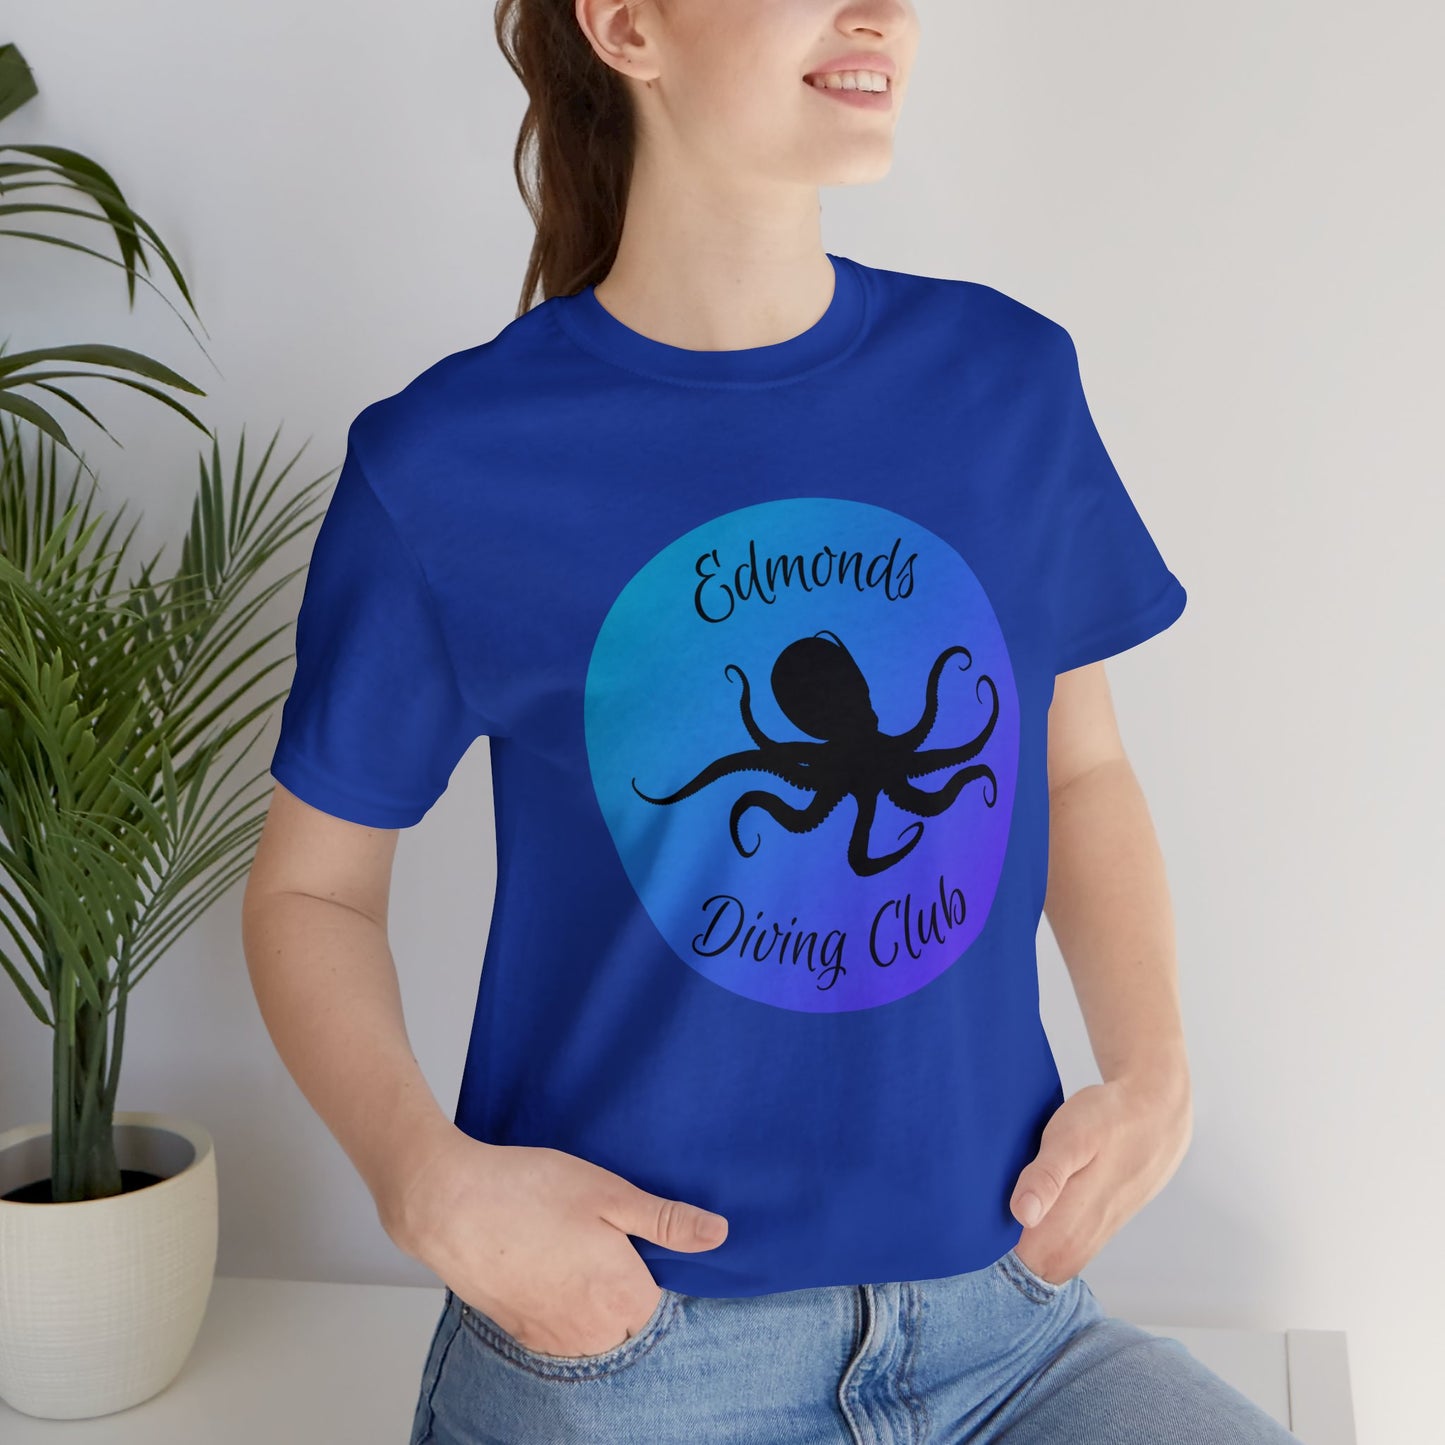 Edmonds Diving Club T-shirt